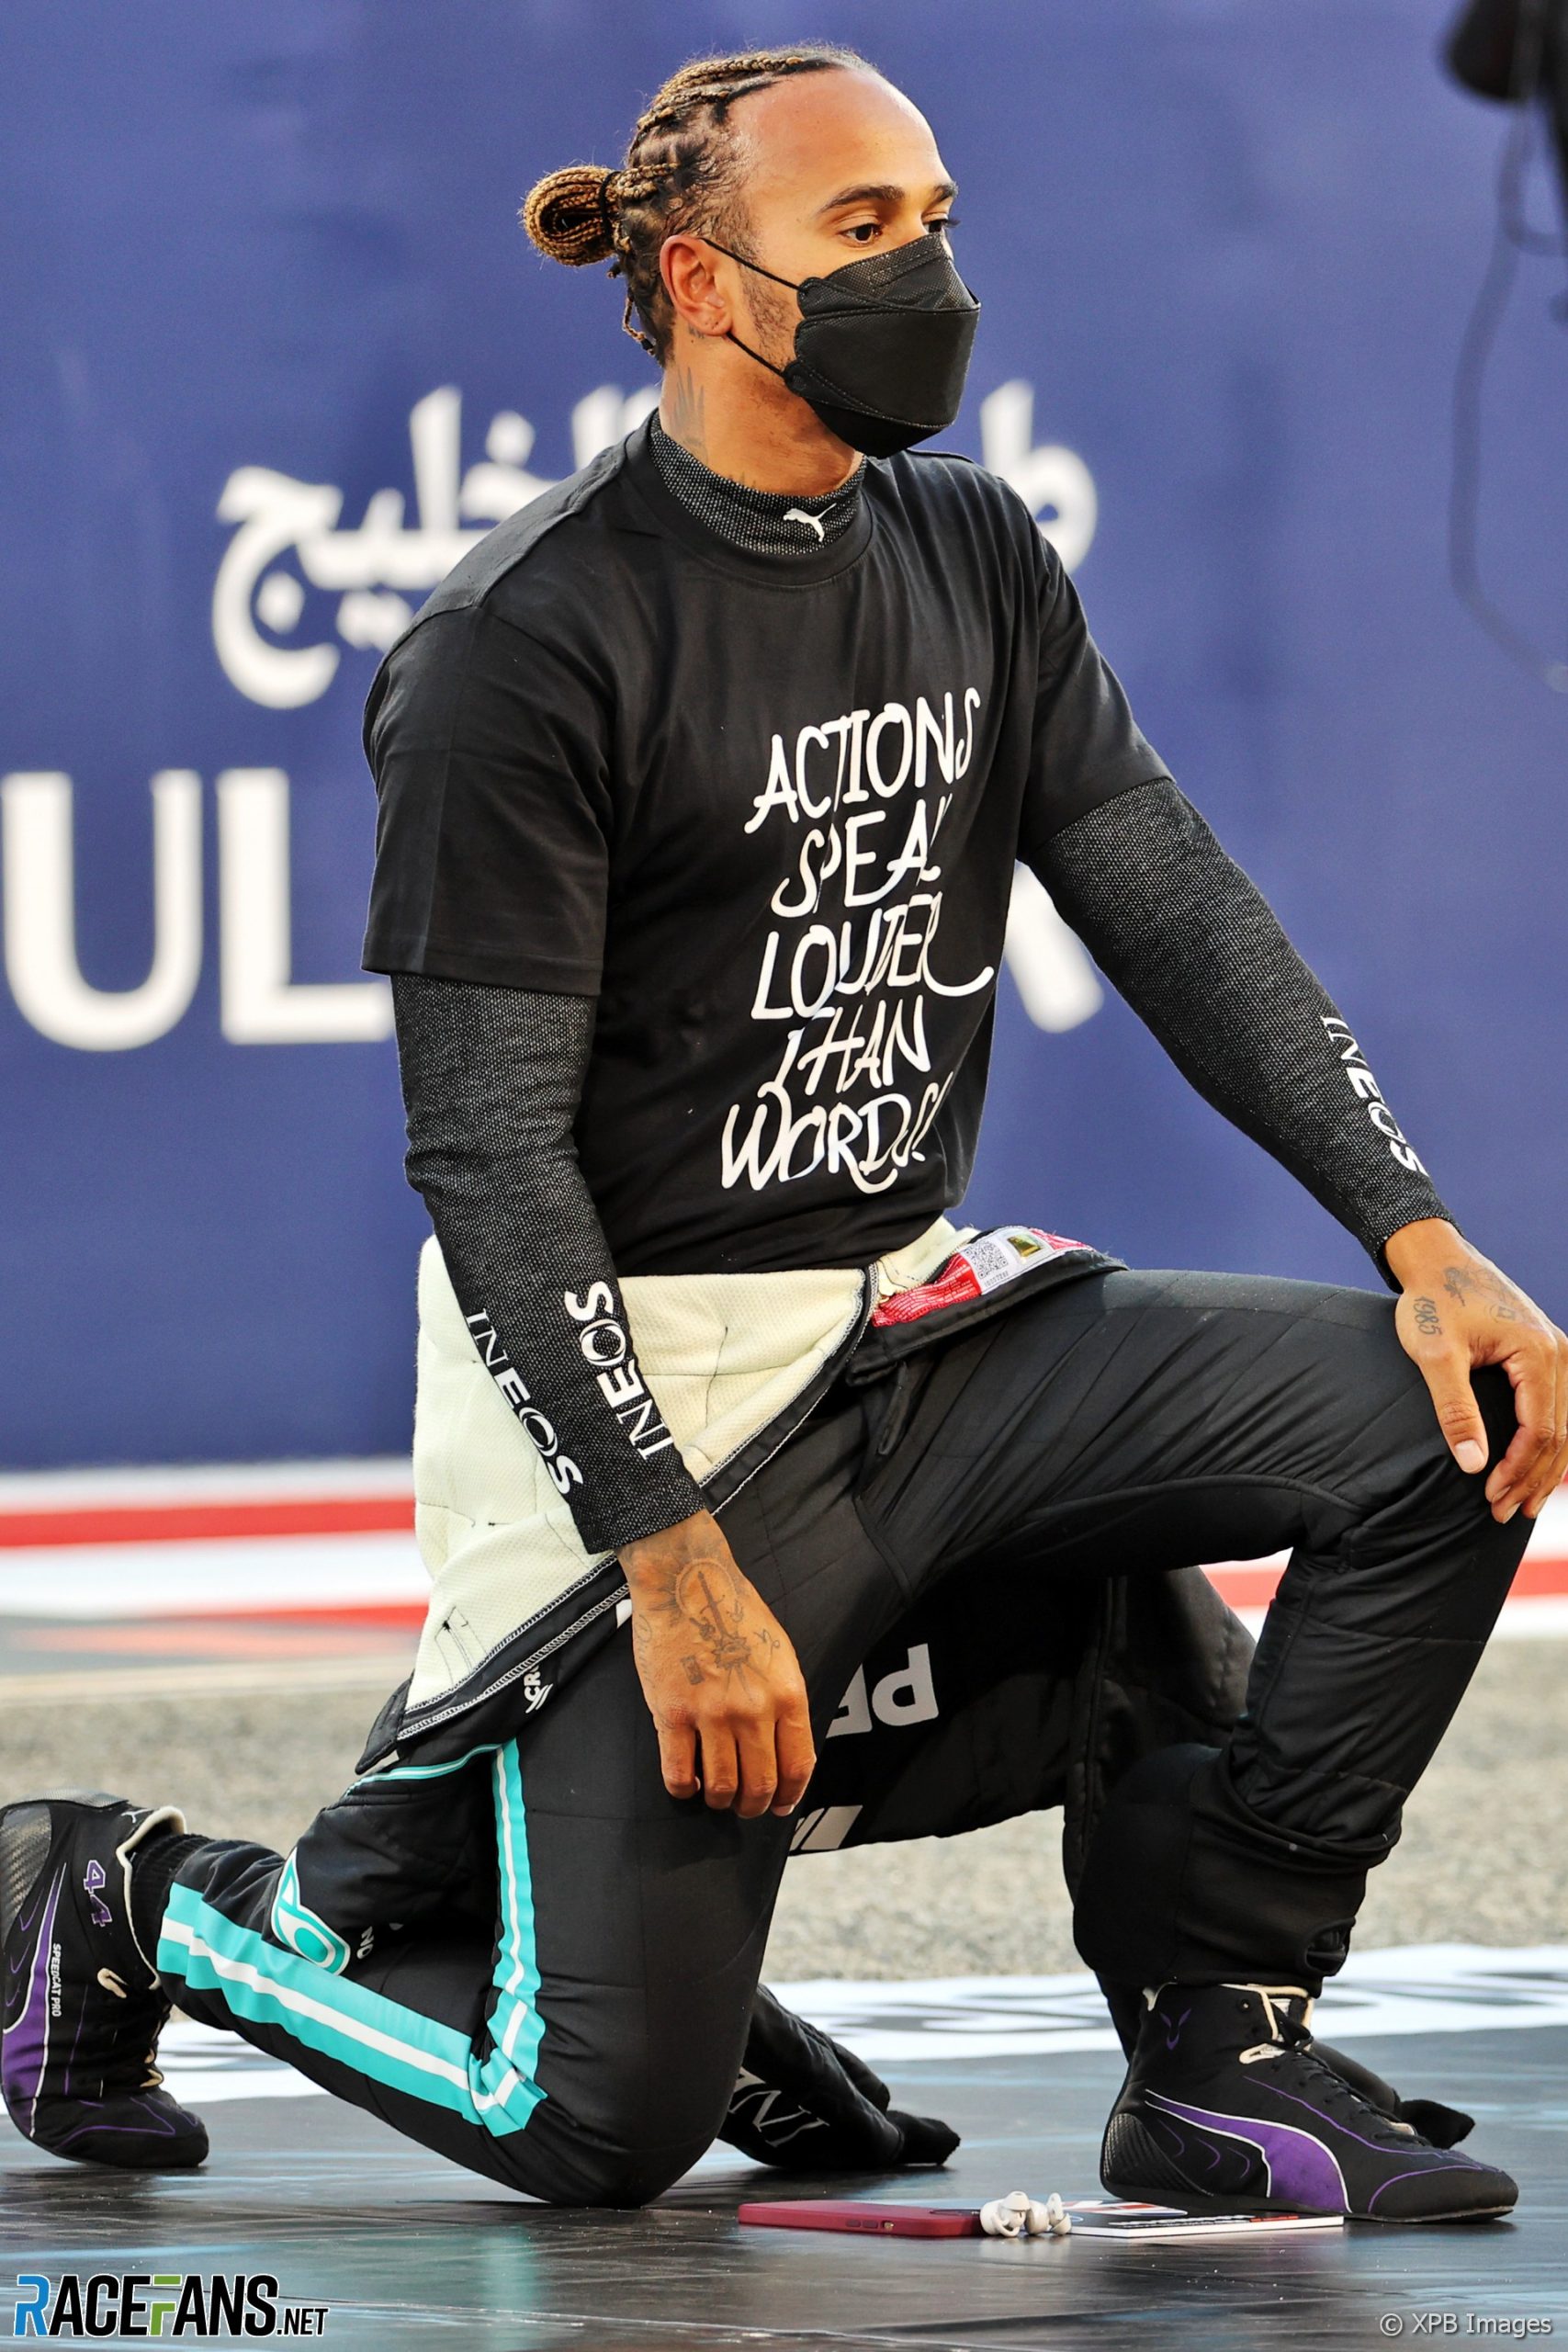 Lewis Hamilton, Bahrain, 2021